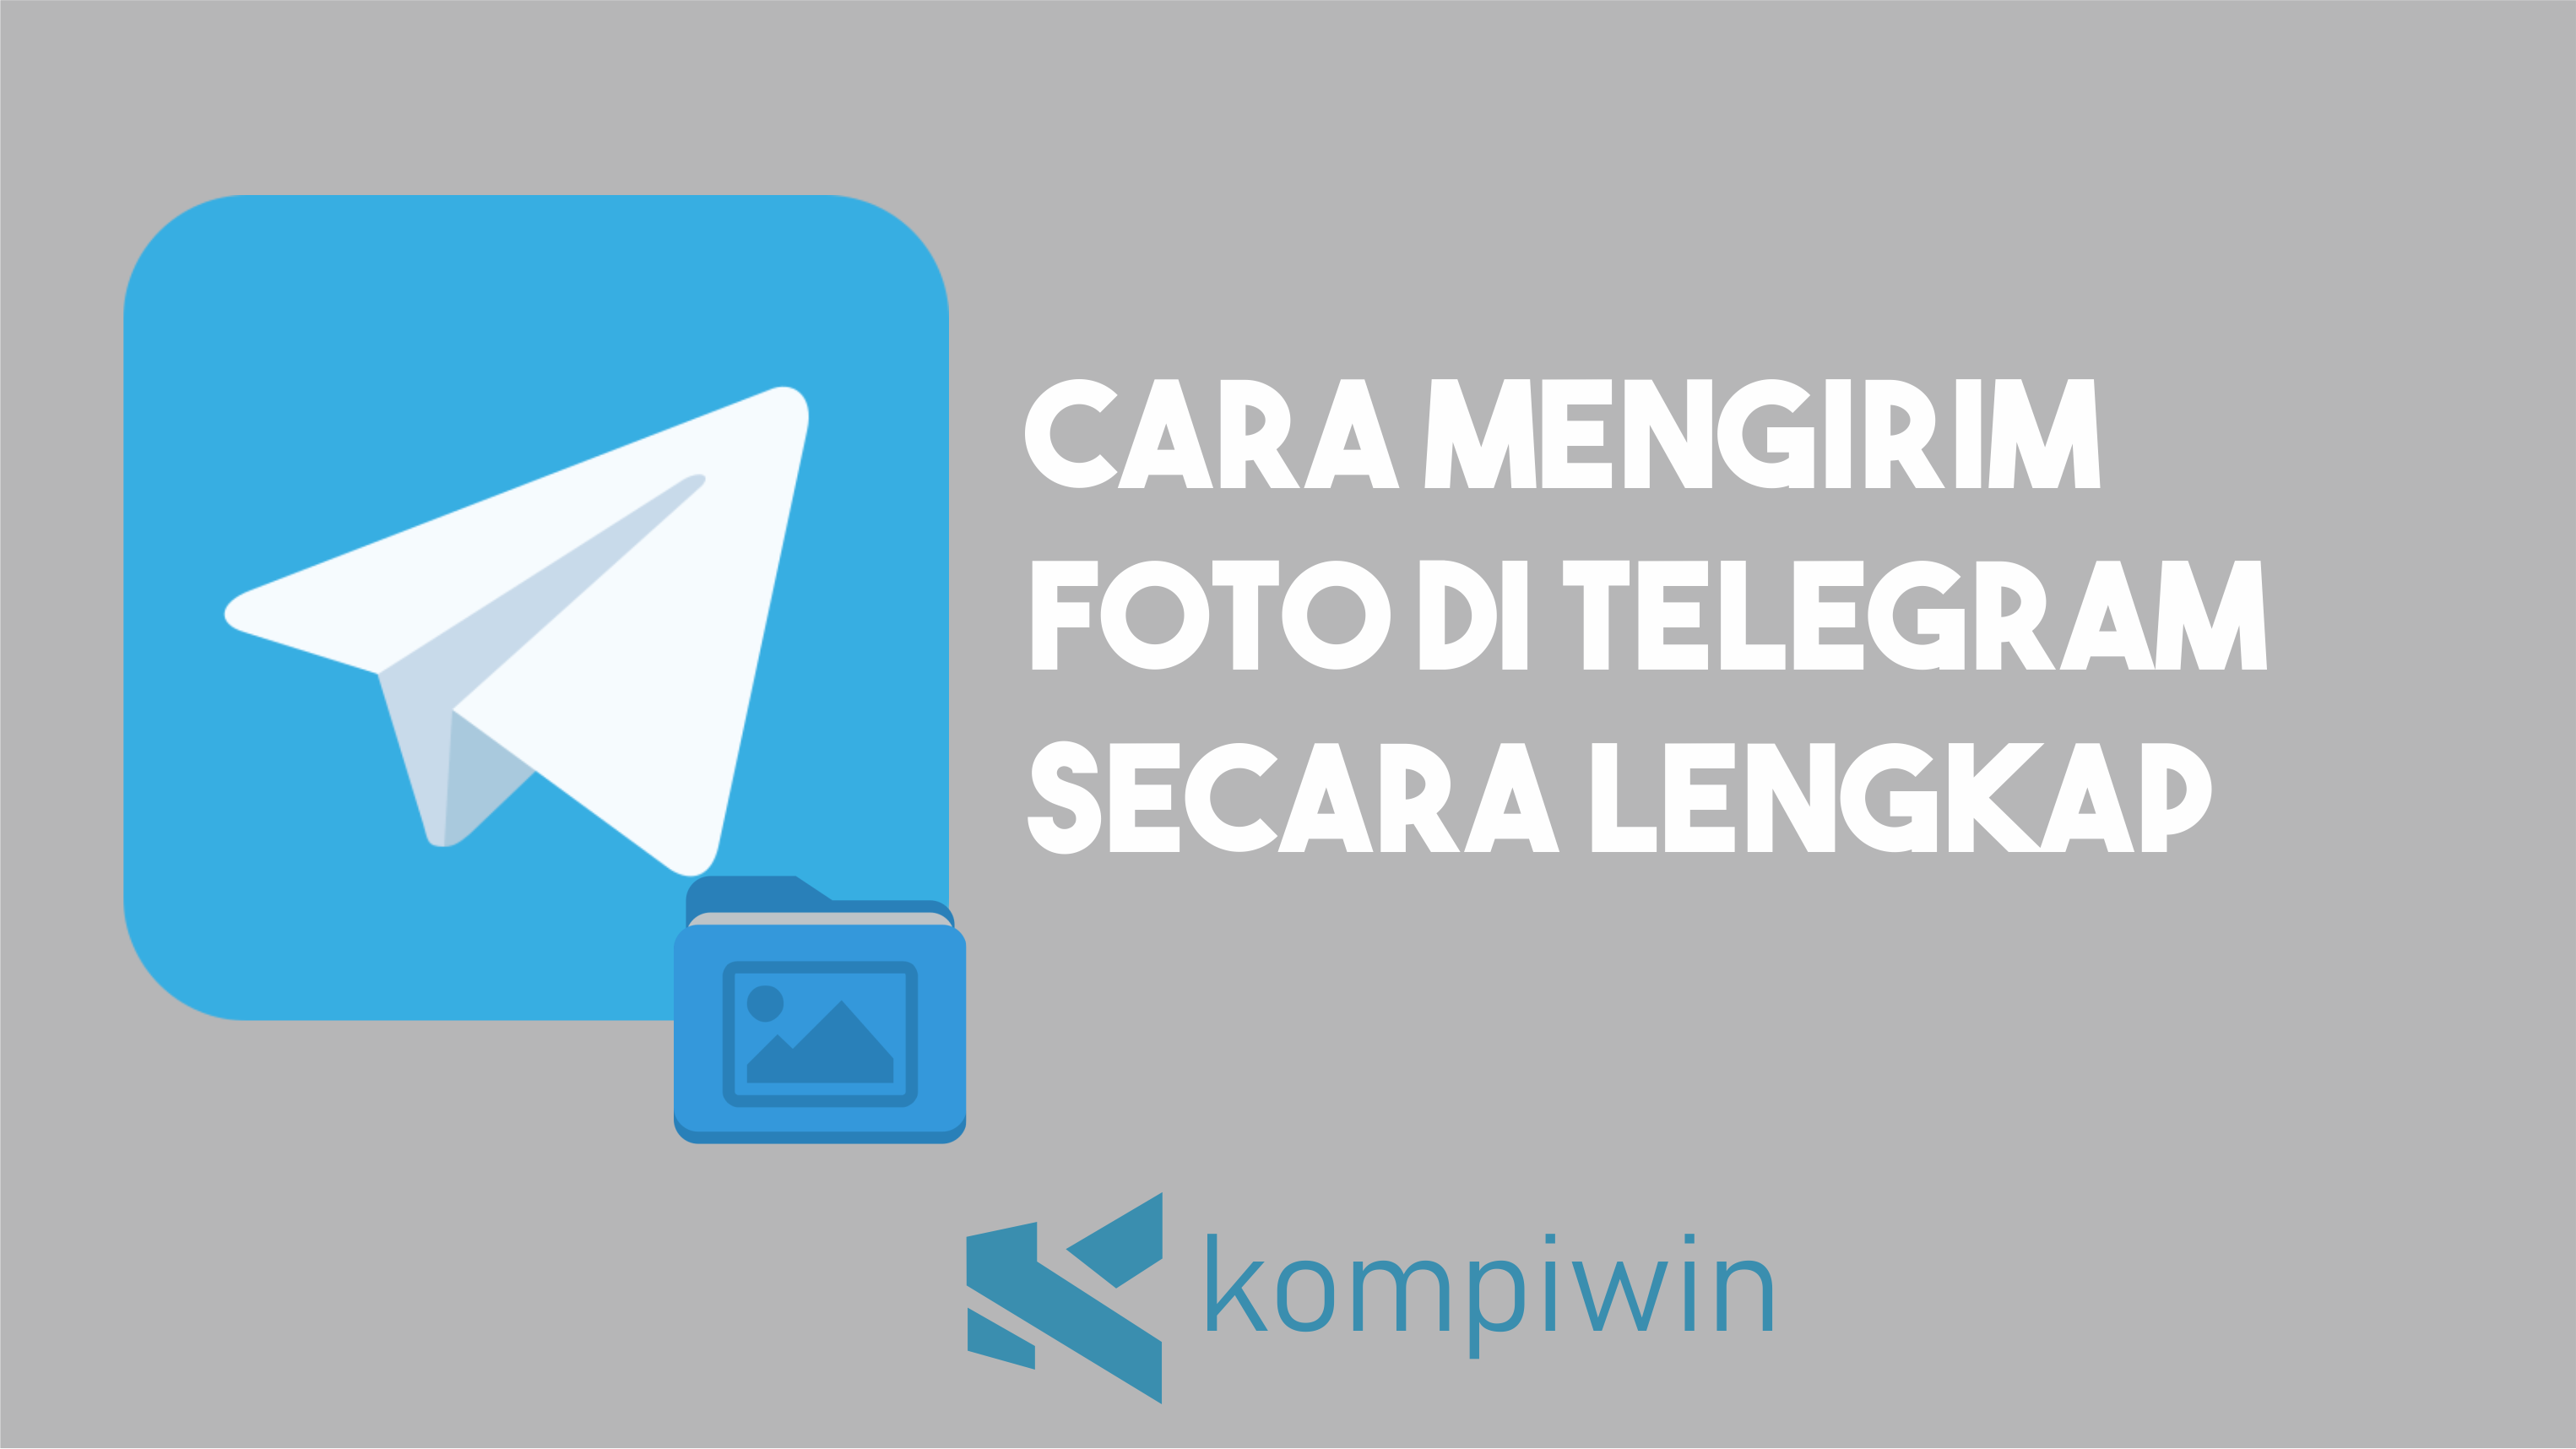 Cara Mengirim Foto di Telegram Secara Lengkap